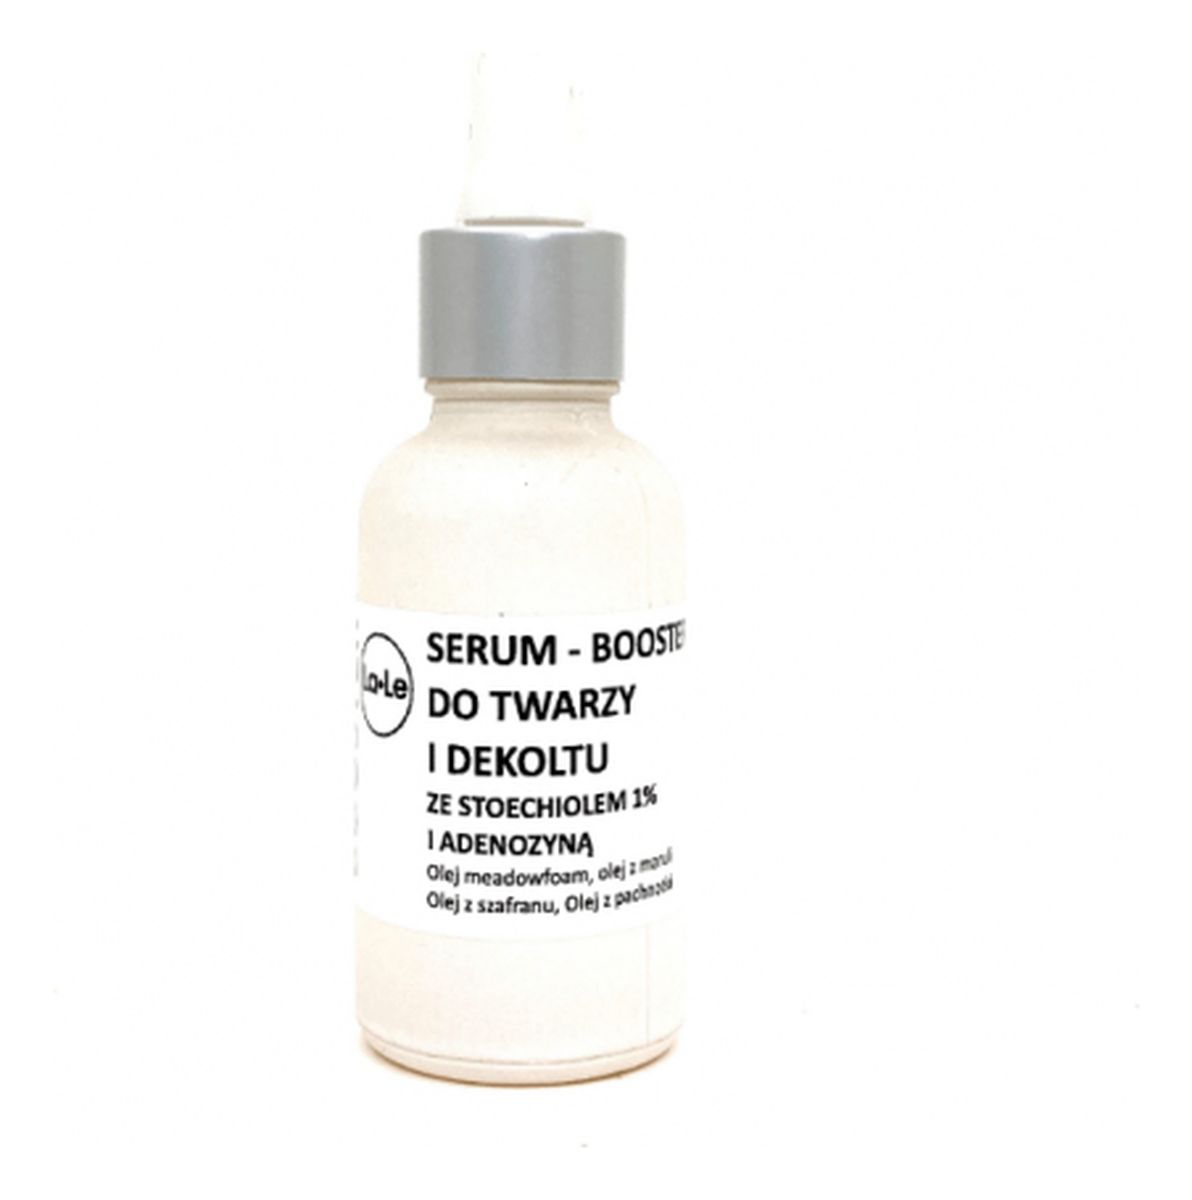 Serum-booster do twarzy i dekoltu ze stoechiolem 1% i adenozyną